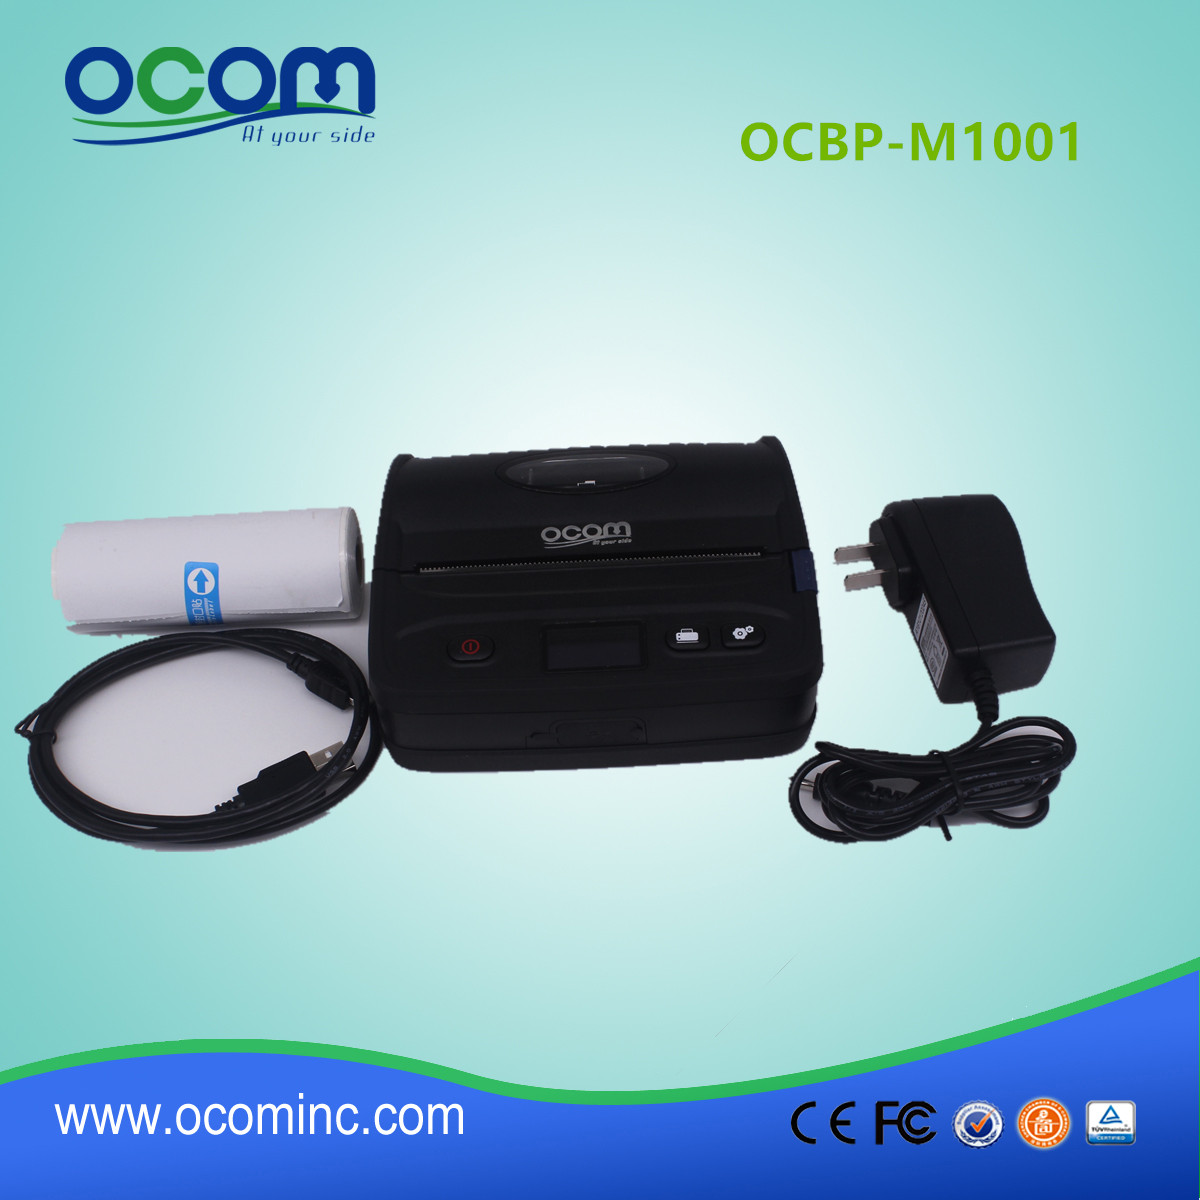 108mm Portbale imprimante d'étiquettes de codes à barres avec Bluetooth (OCBP-M1001)